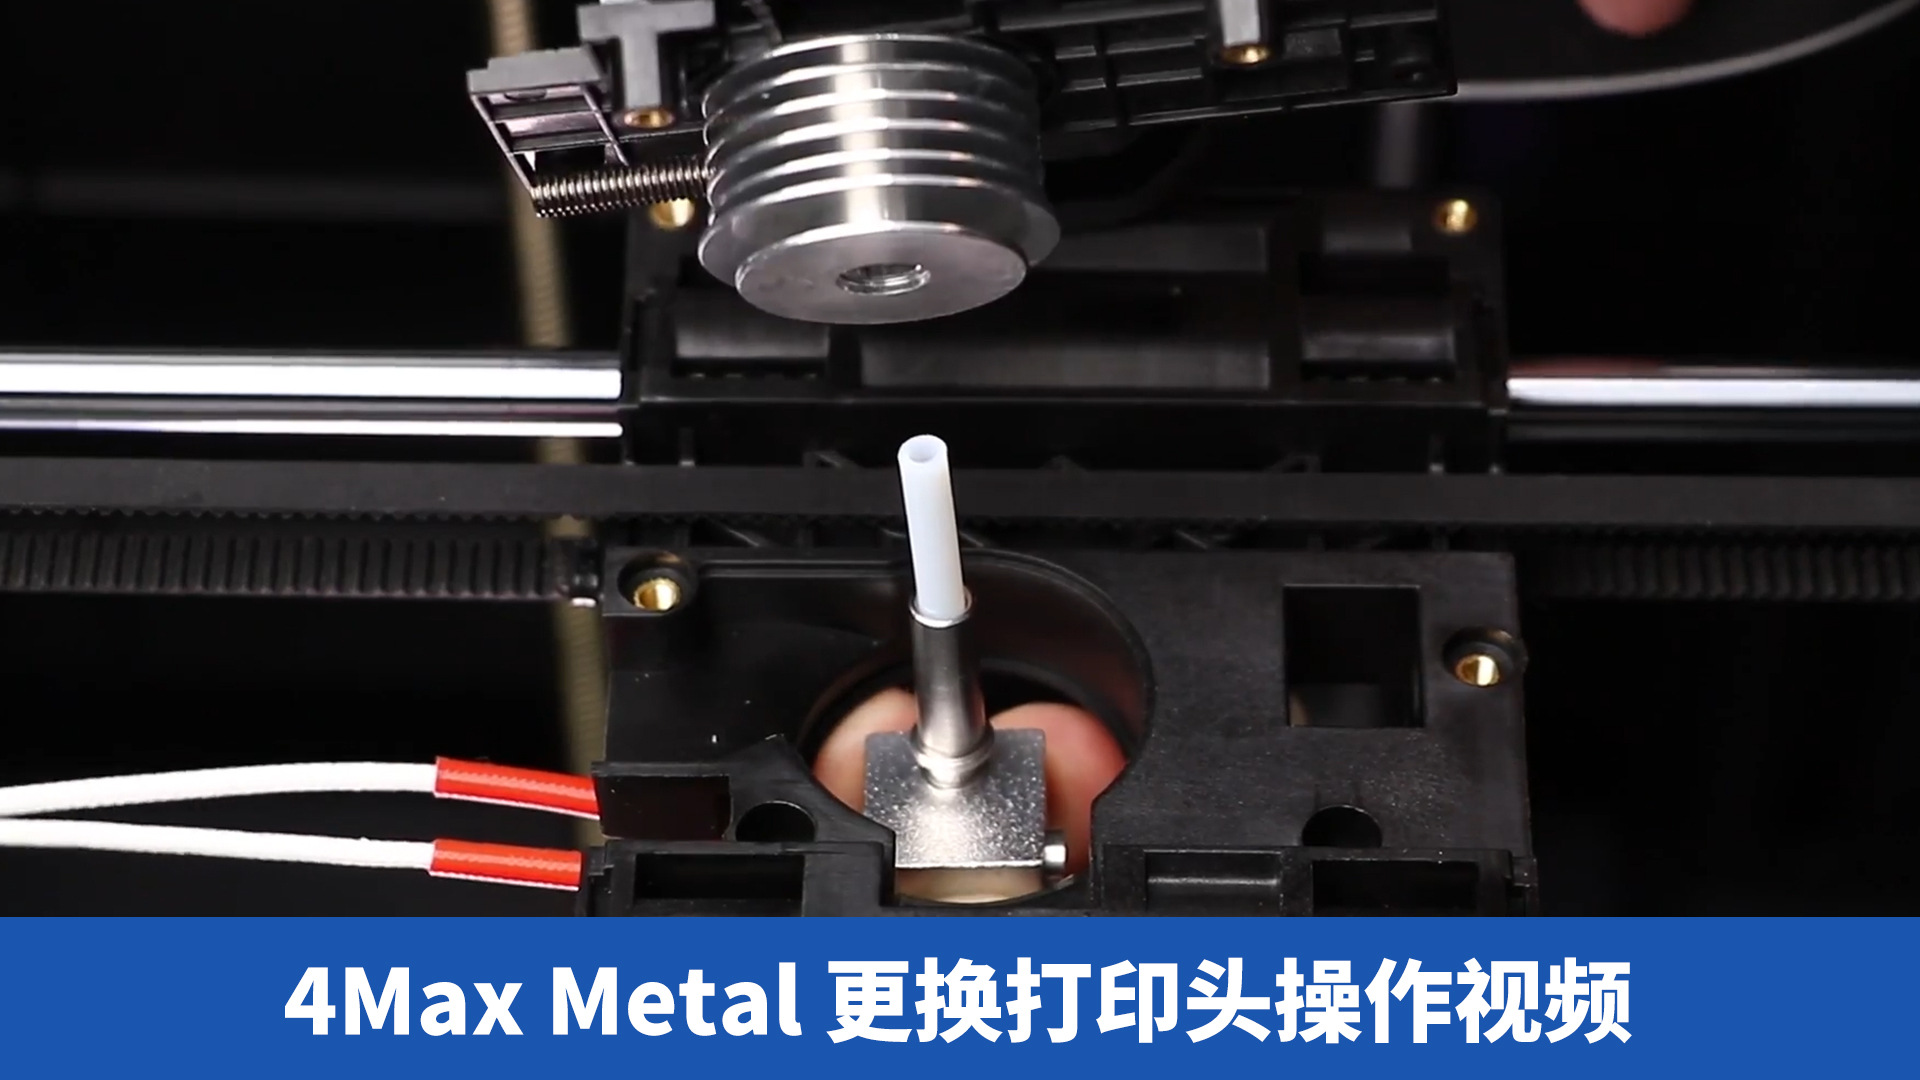 4Max Metal更换打印头操作视频-CN